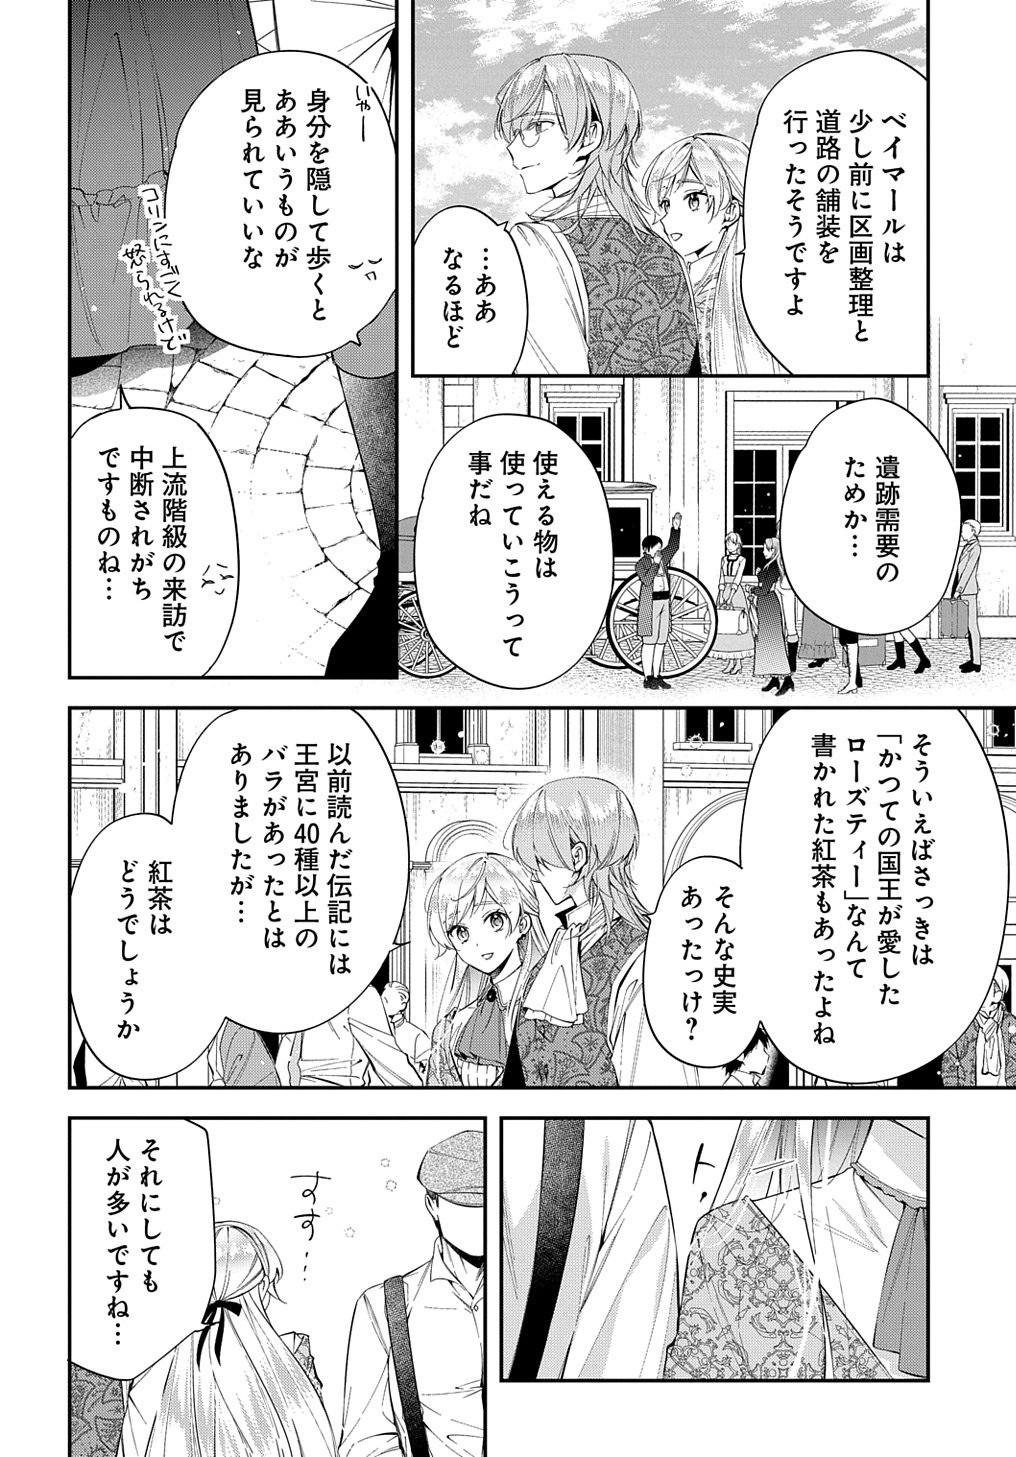 Outaishi ni Konyaku Hakisareta no de, Mou Baka no Furi wa Yameyou to Omoimasu - Chapter 24 - Page 8